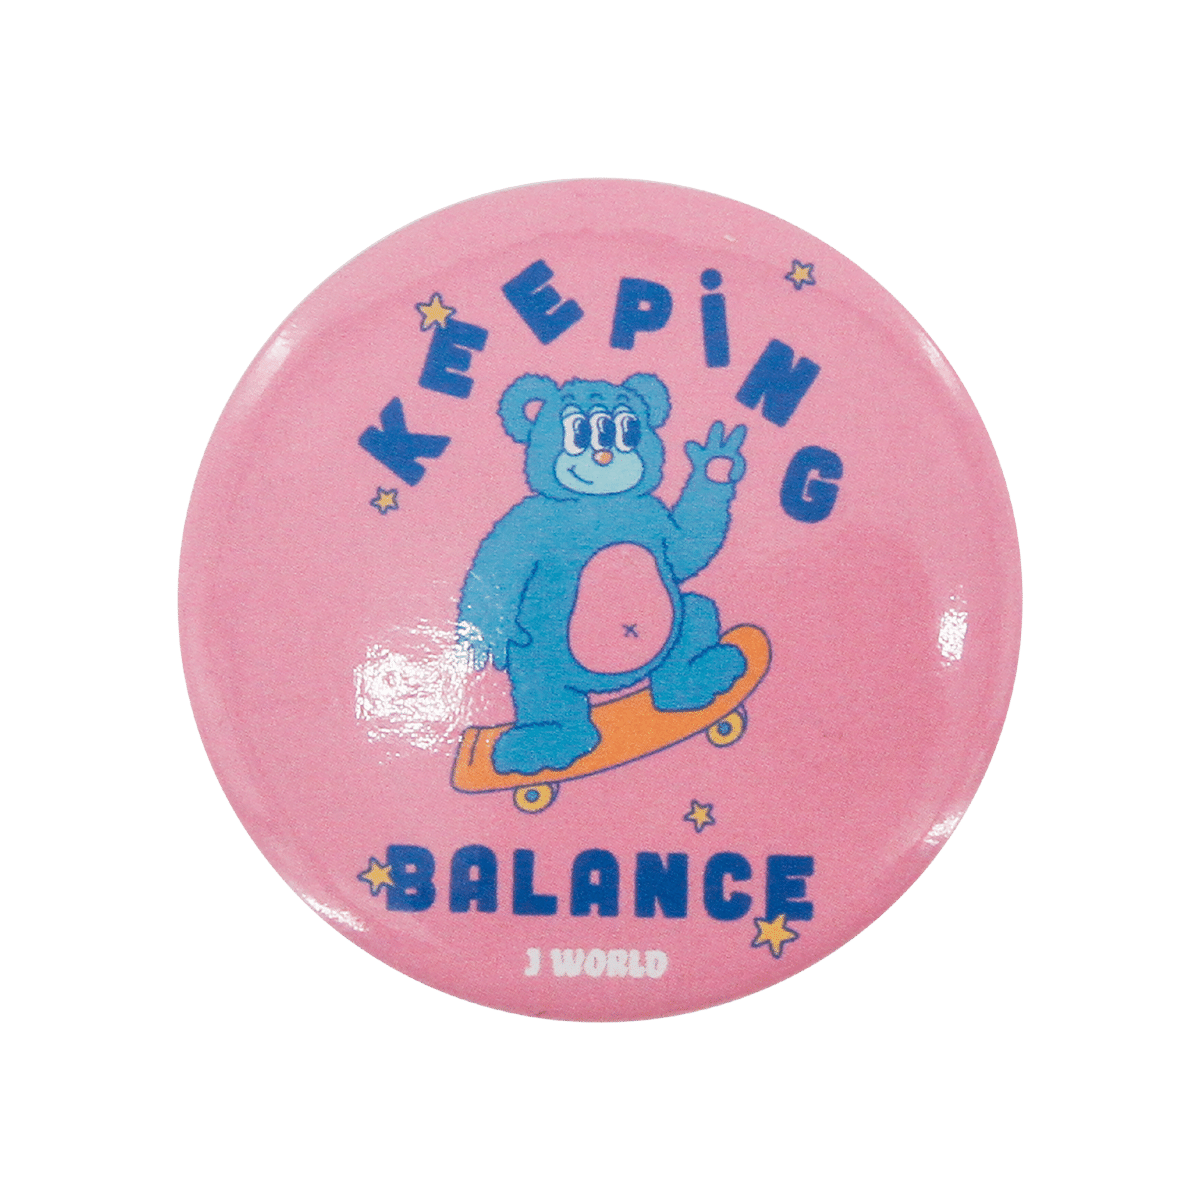 Balance badge for bag (1.75